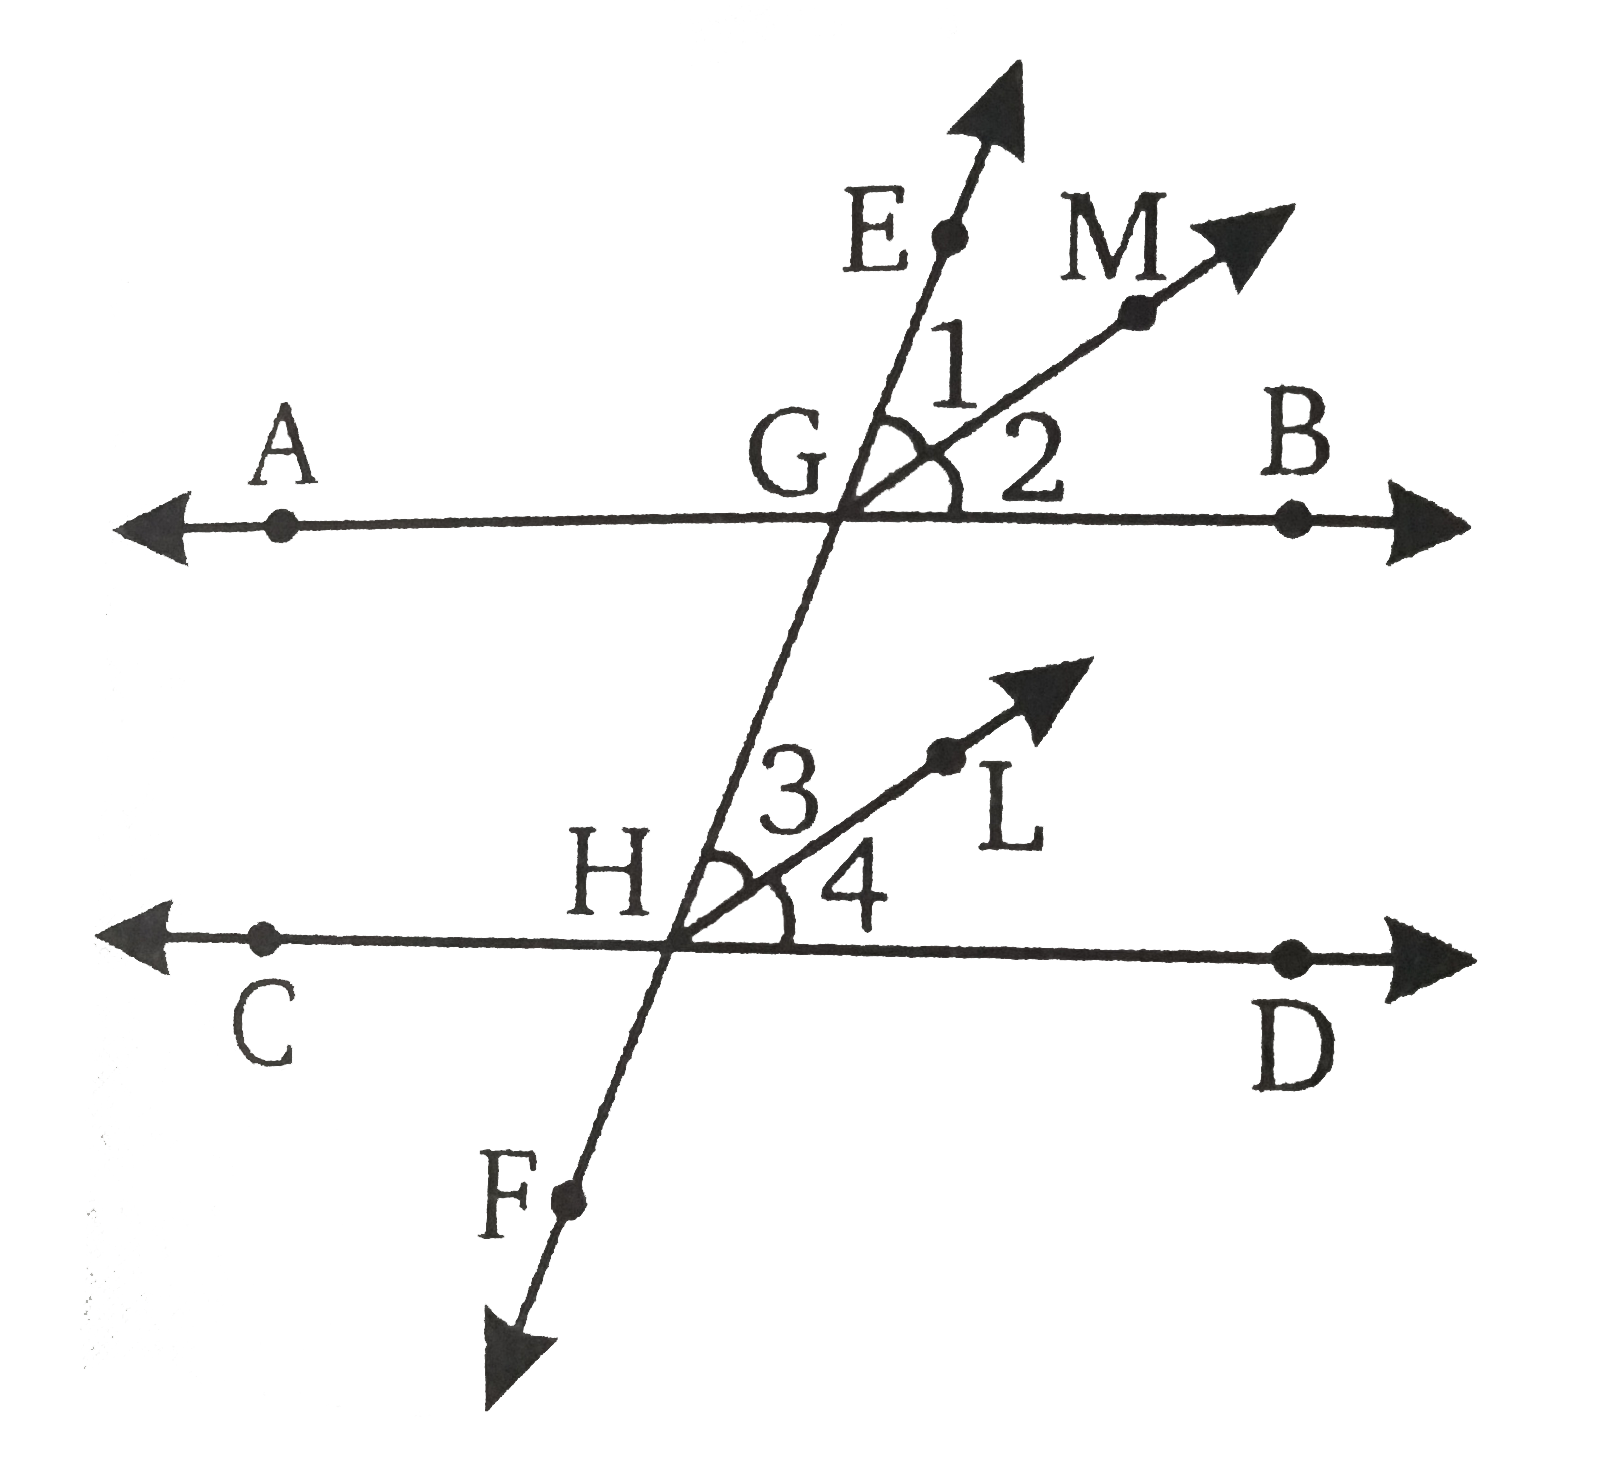 चित्र में, दो समान्तर रेखाओं AB और CD की एक तिर्यक EF है | GM और HL क्रमश : संगत कोण angleEGB और angleEHD के समअर्द्धक है | सिद्ध कीजिए कि